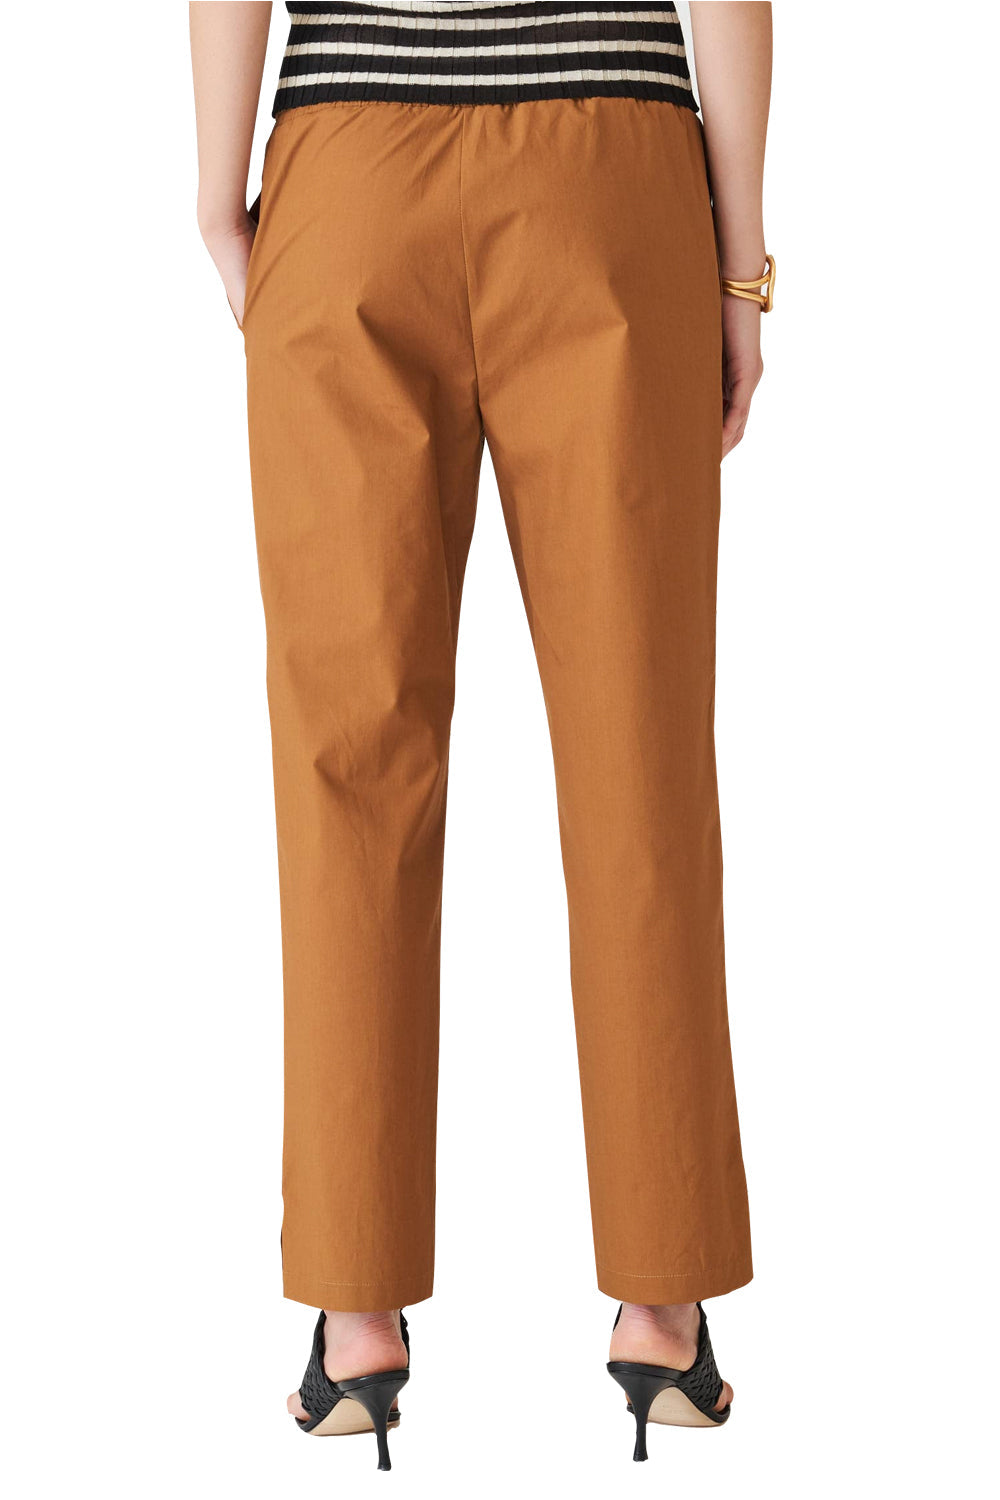 Tailleurs in cotone con pantalone con elastico - SUOLI Tailleur SUOLI   